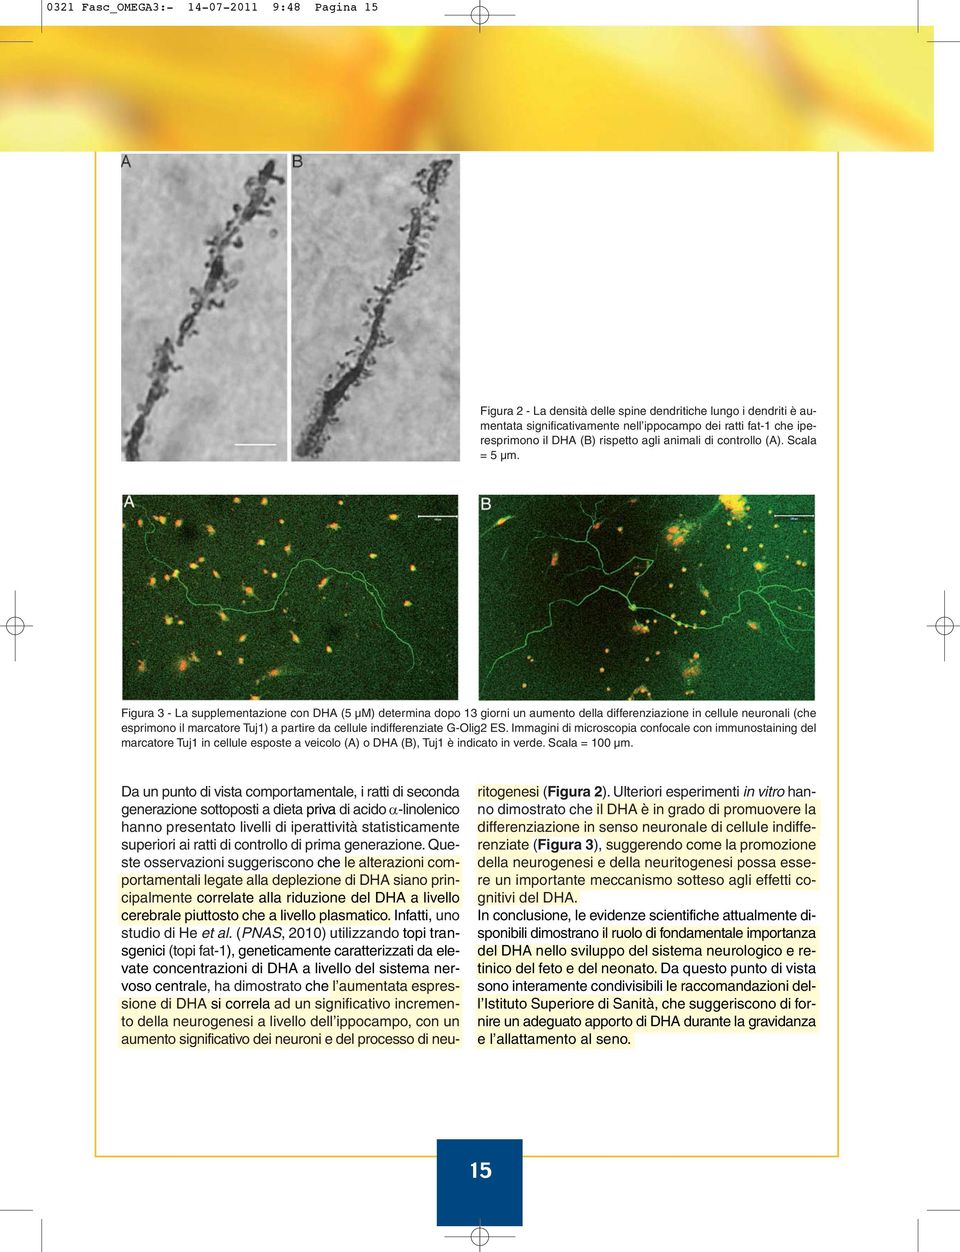 Figura 3 - La supplementazione con DHA (5 µm) determina dopo 13 giorni un aumento della differenziazione in cellule neuronali (che esprimono il marcatore Tuj1) a partire da cellule indifferenziate